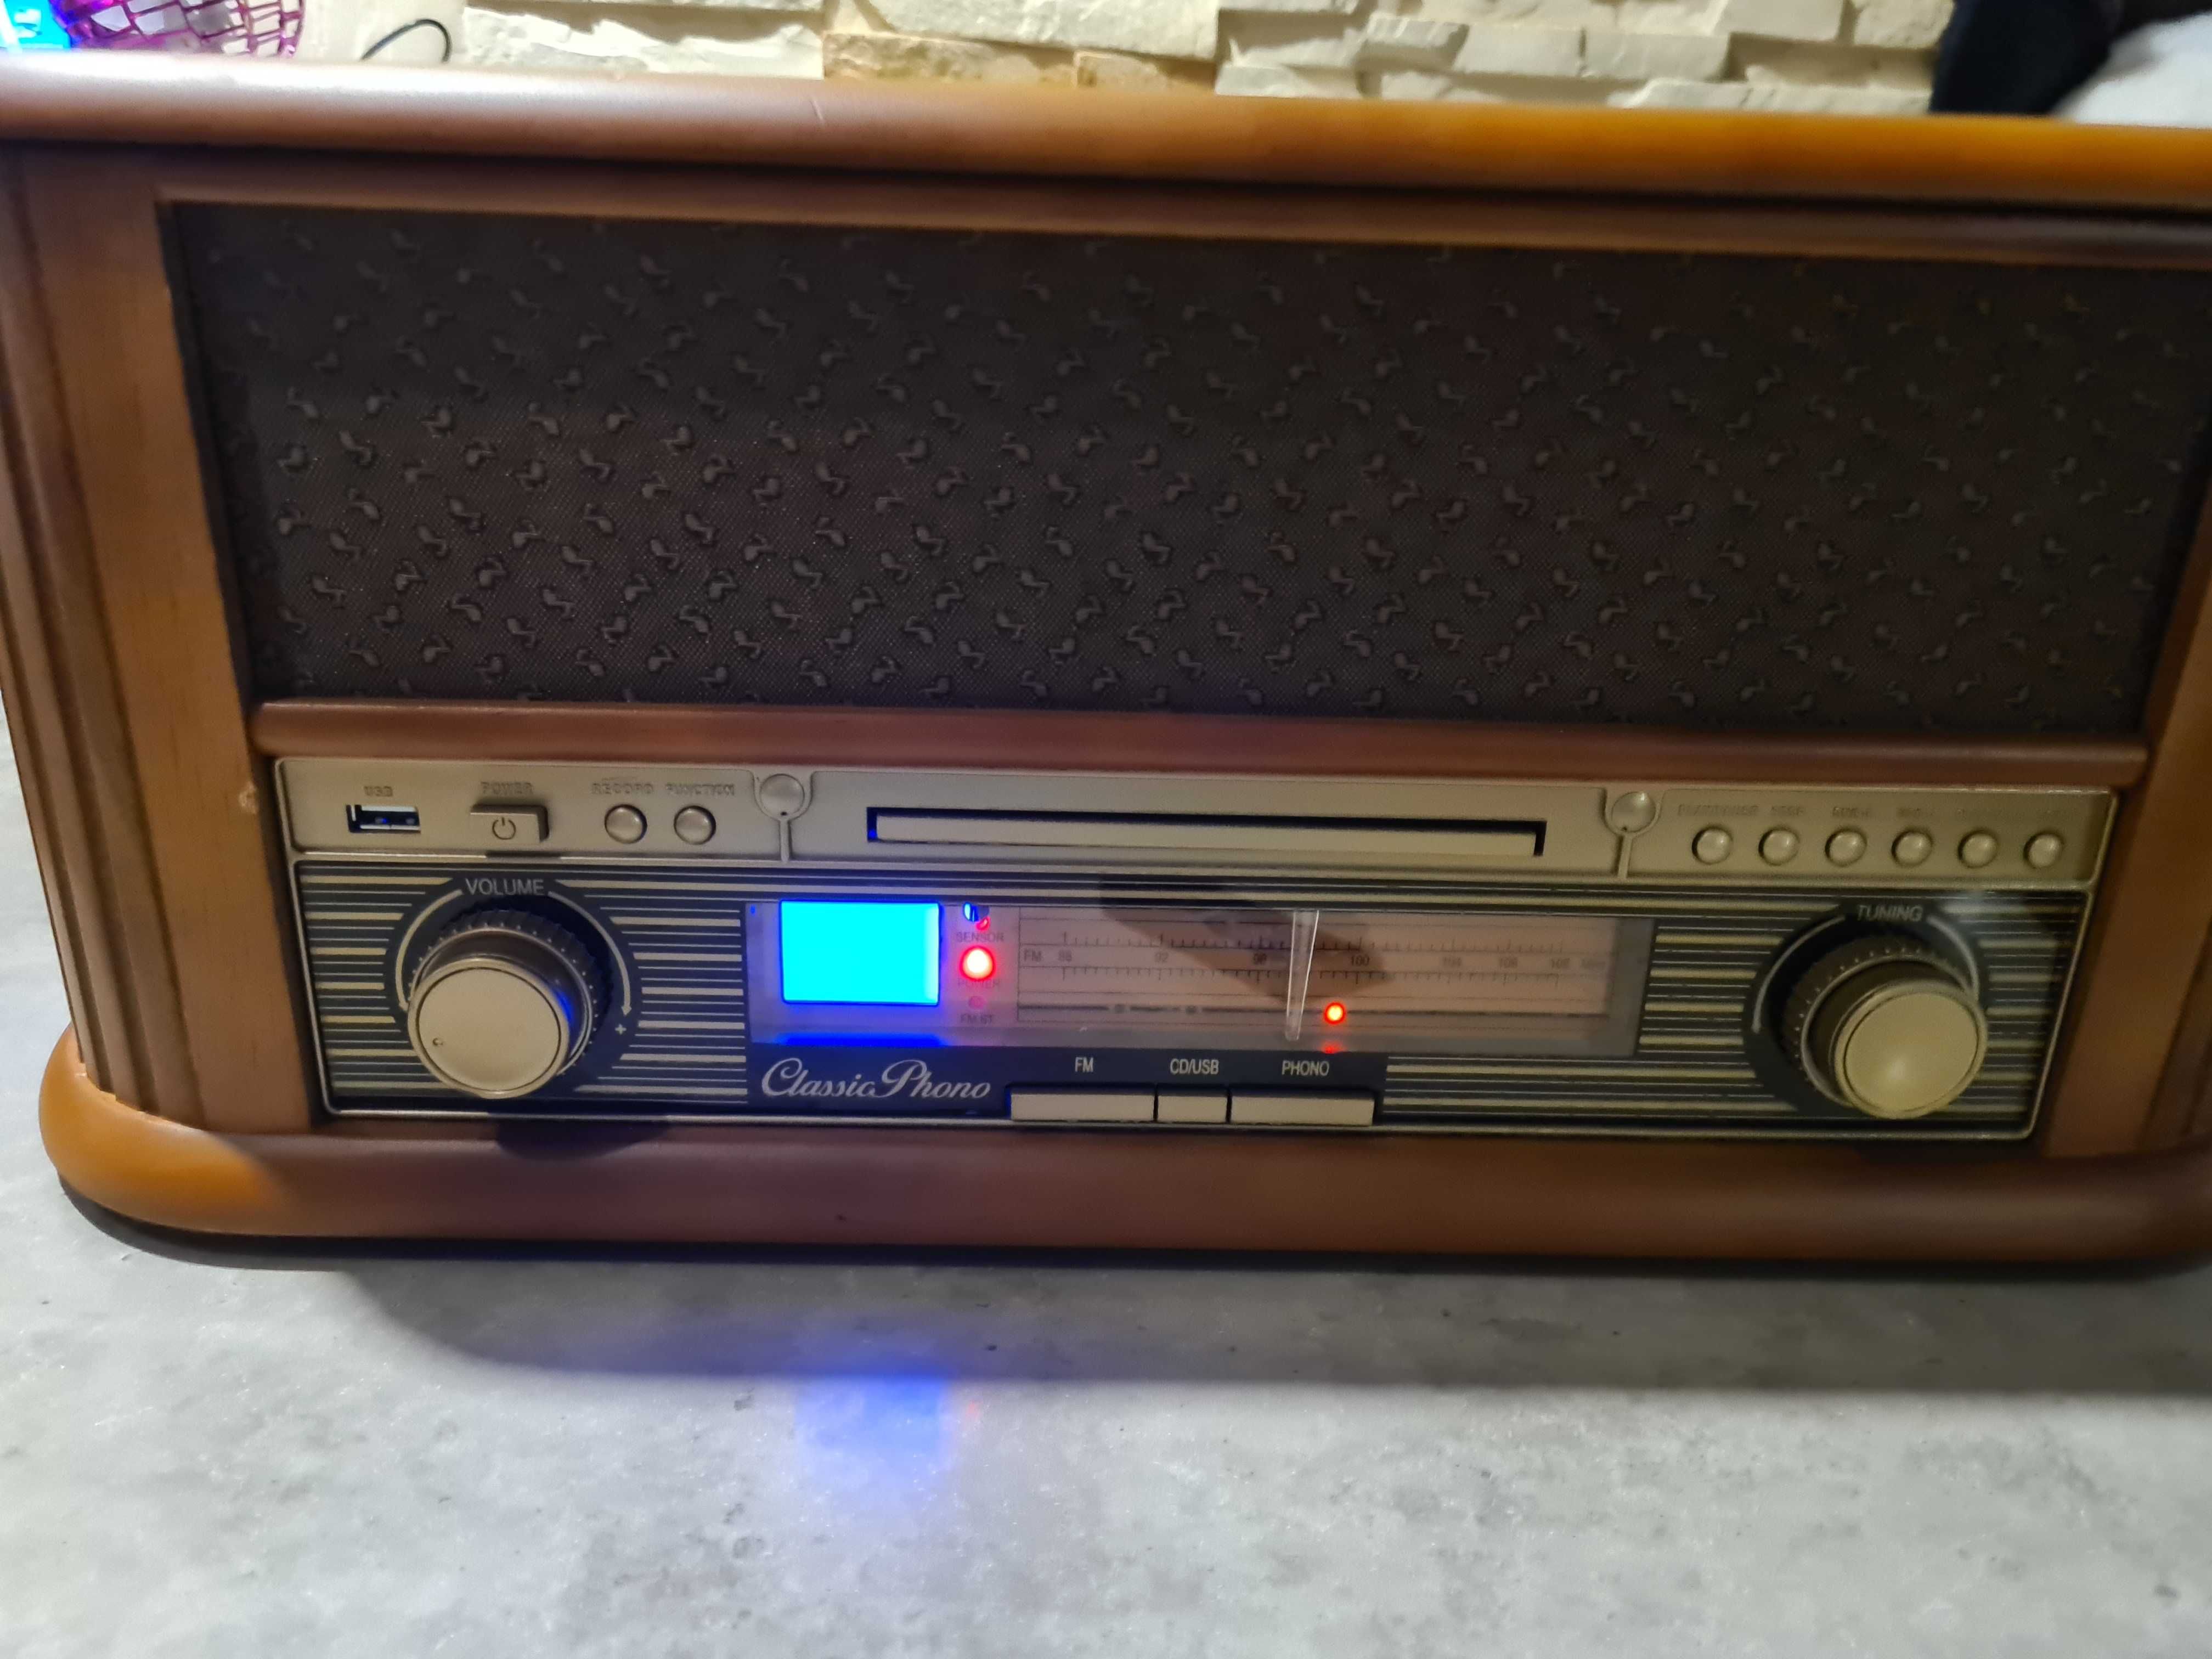 gramofon Classic Phono TCD-2500 zestaw muzyczny